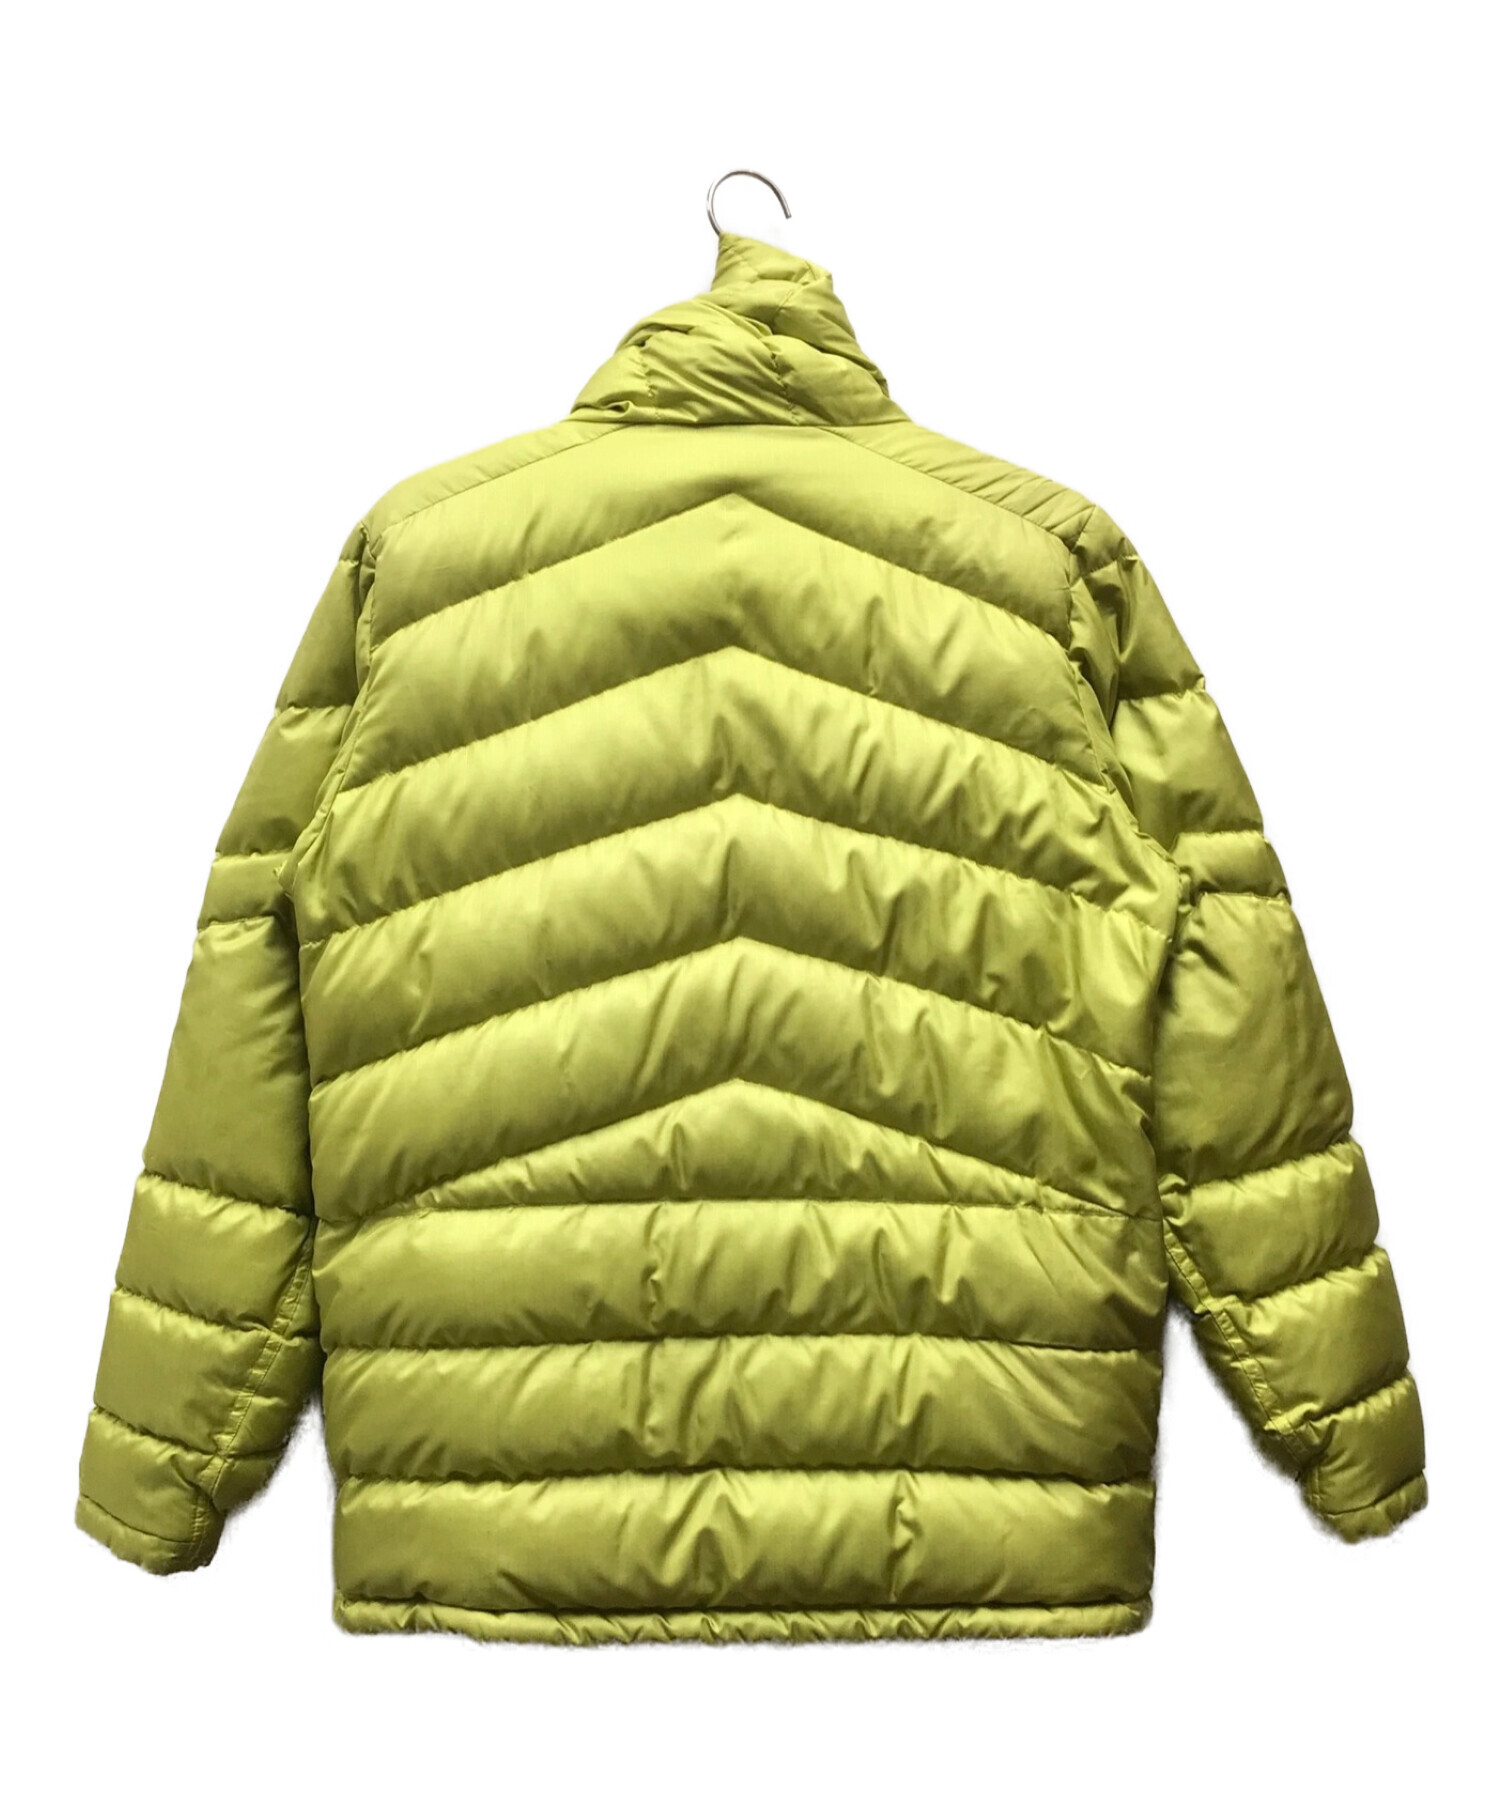 Patagonia (パタゴニア) グースダウンジャケット 黄緑 サイズ:S